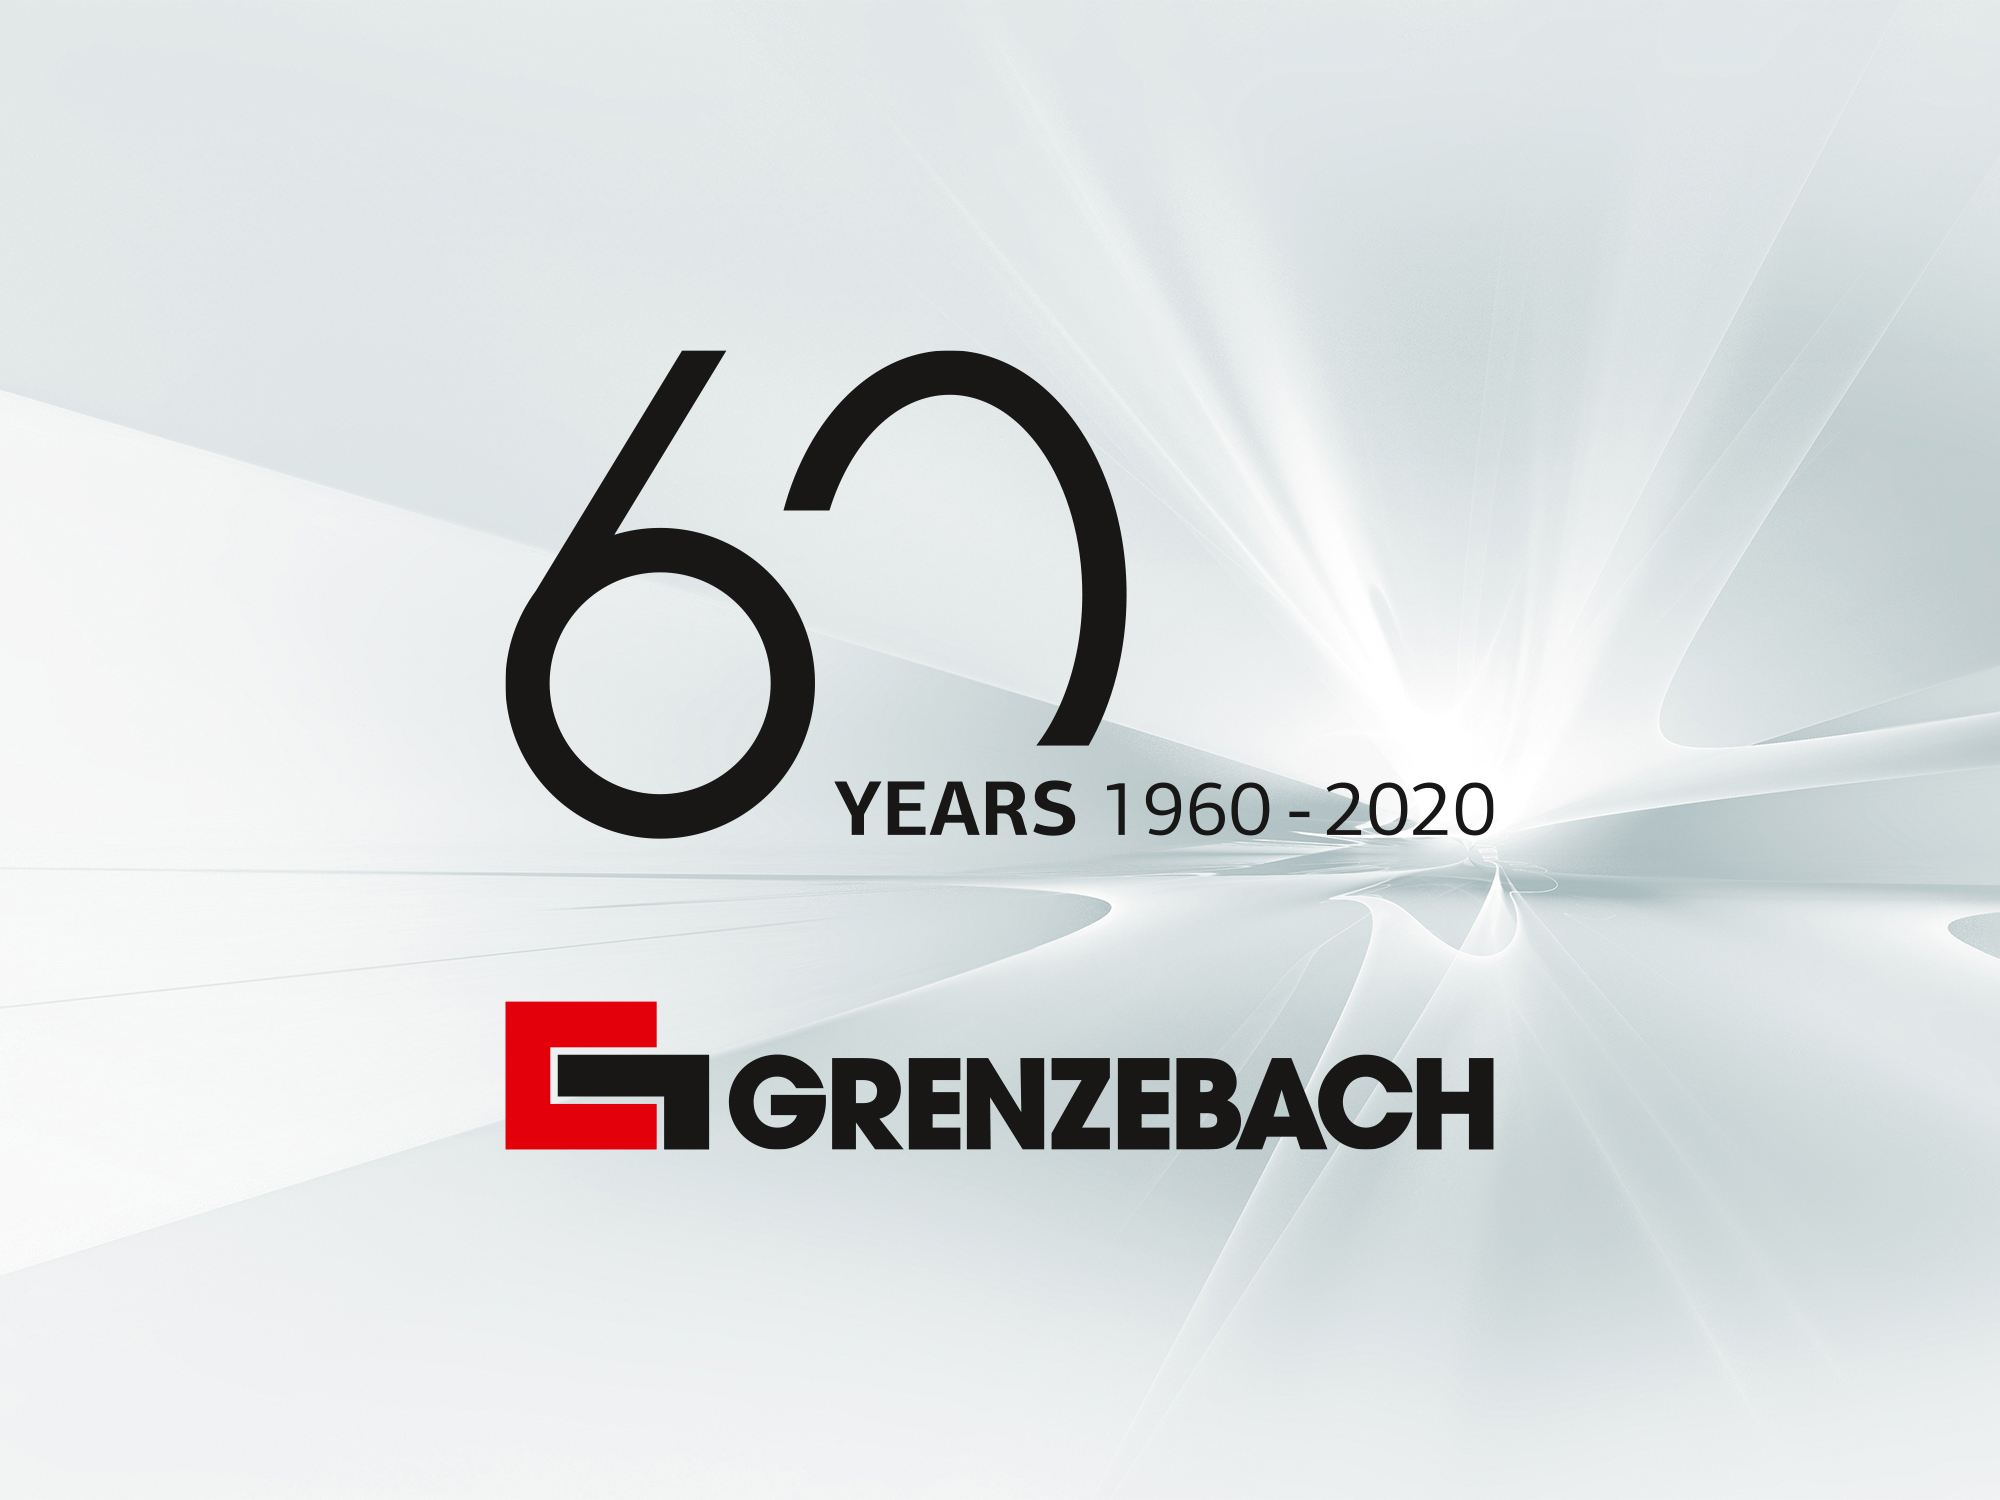 2020 anniversary of 60 years Grenzebach 